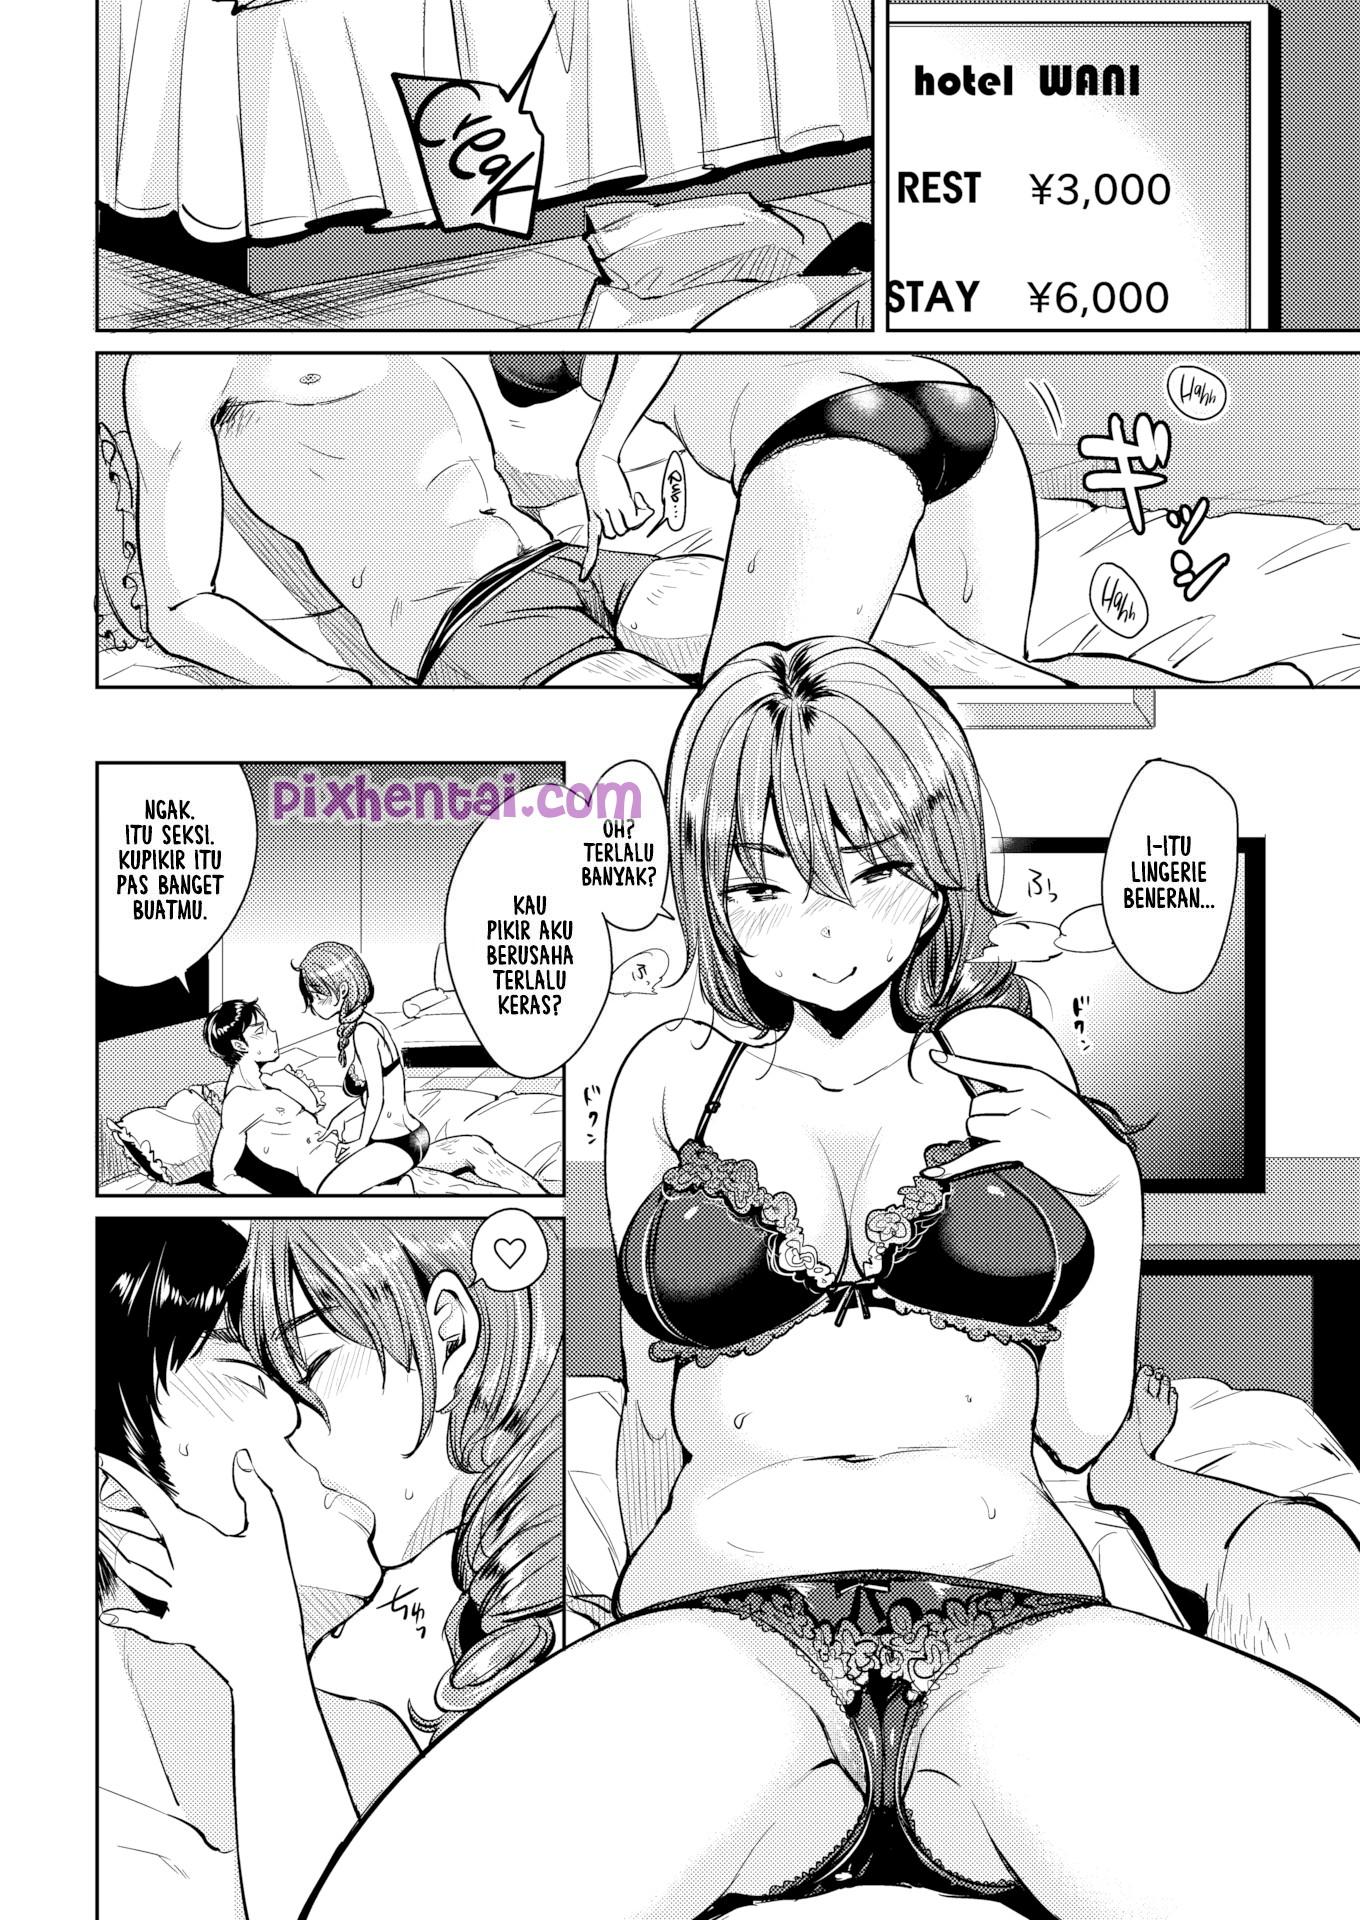 Komik hentai xxx manga sex bokep bawa cewek yang baru dikenal ke hotel 06